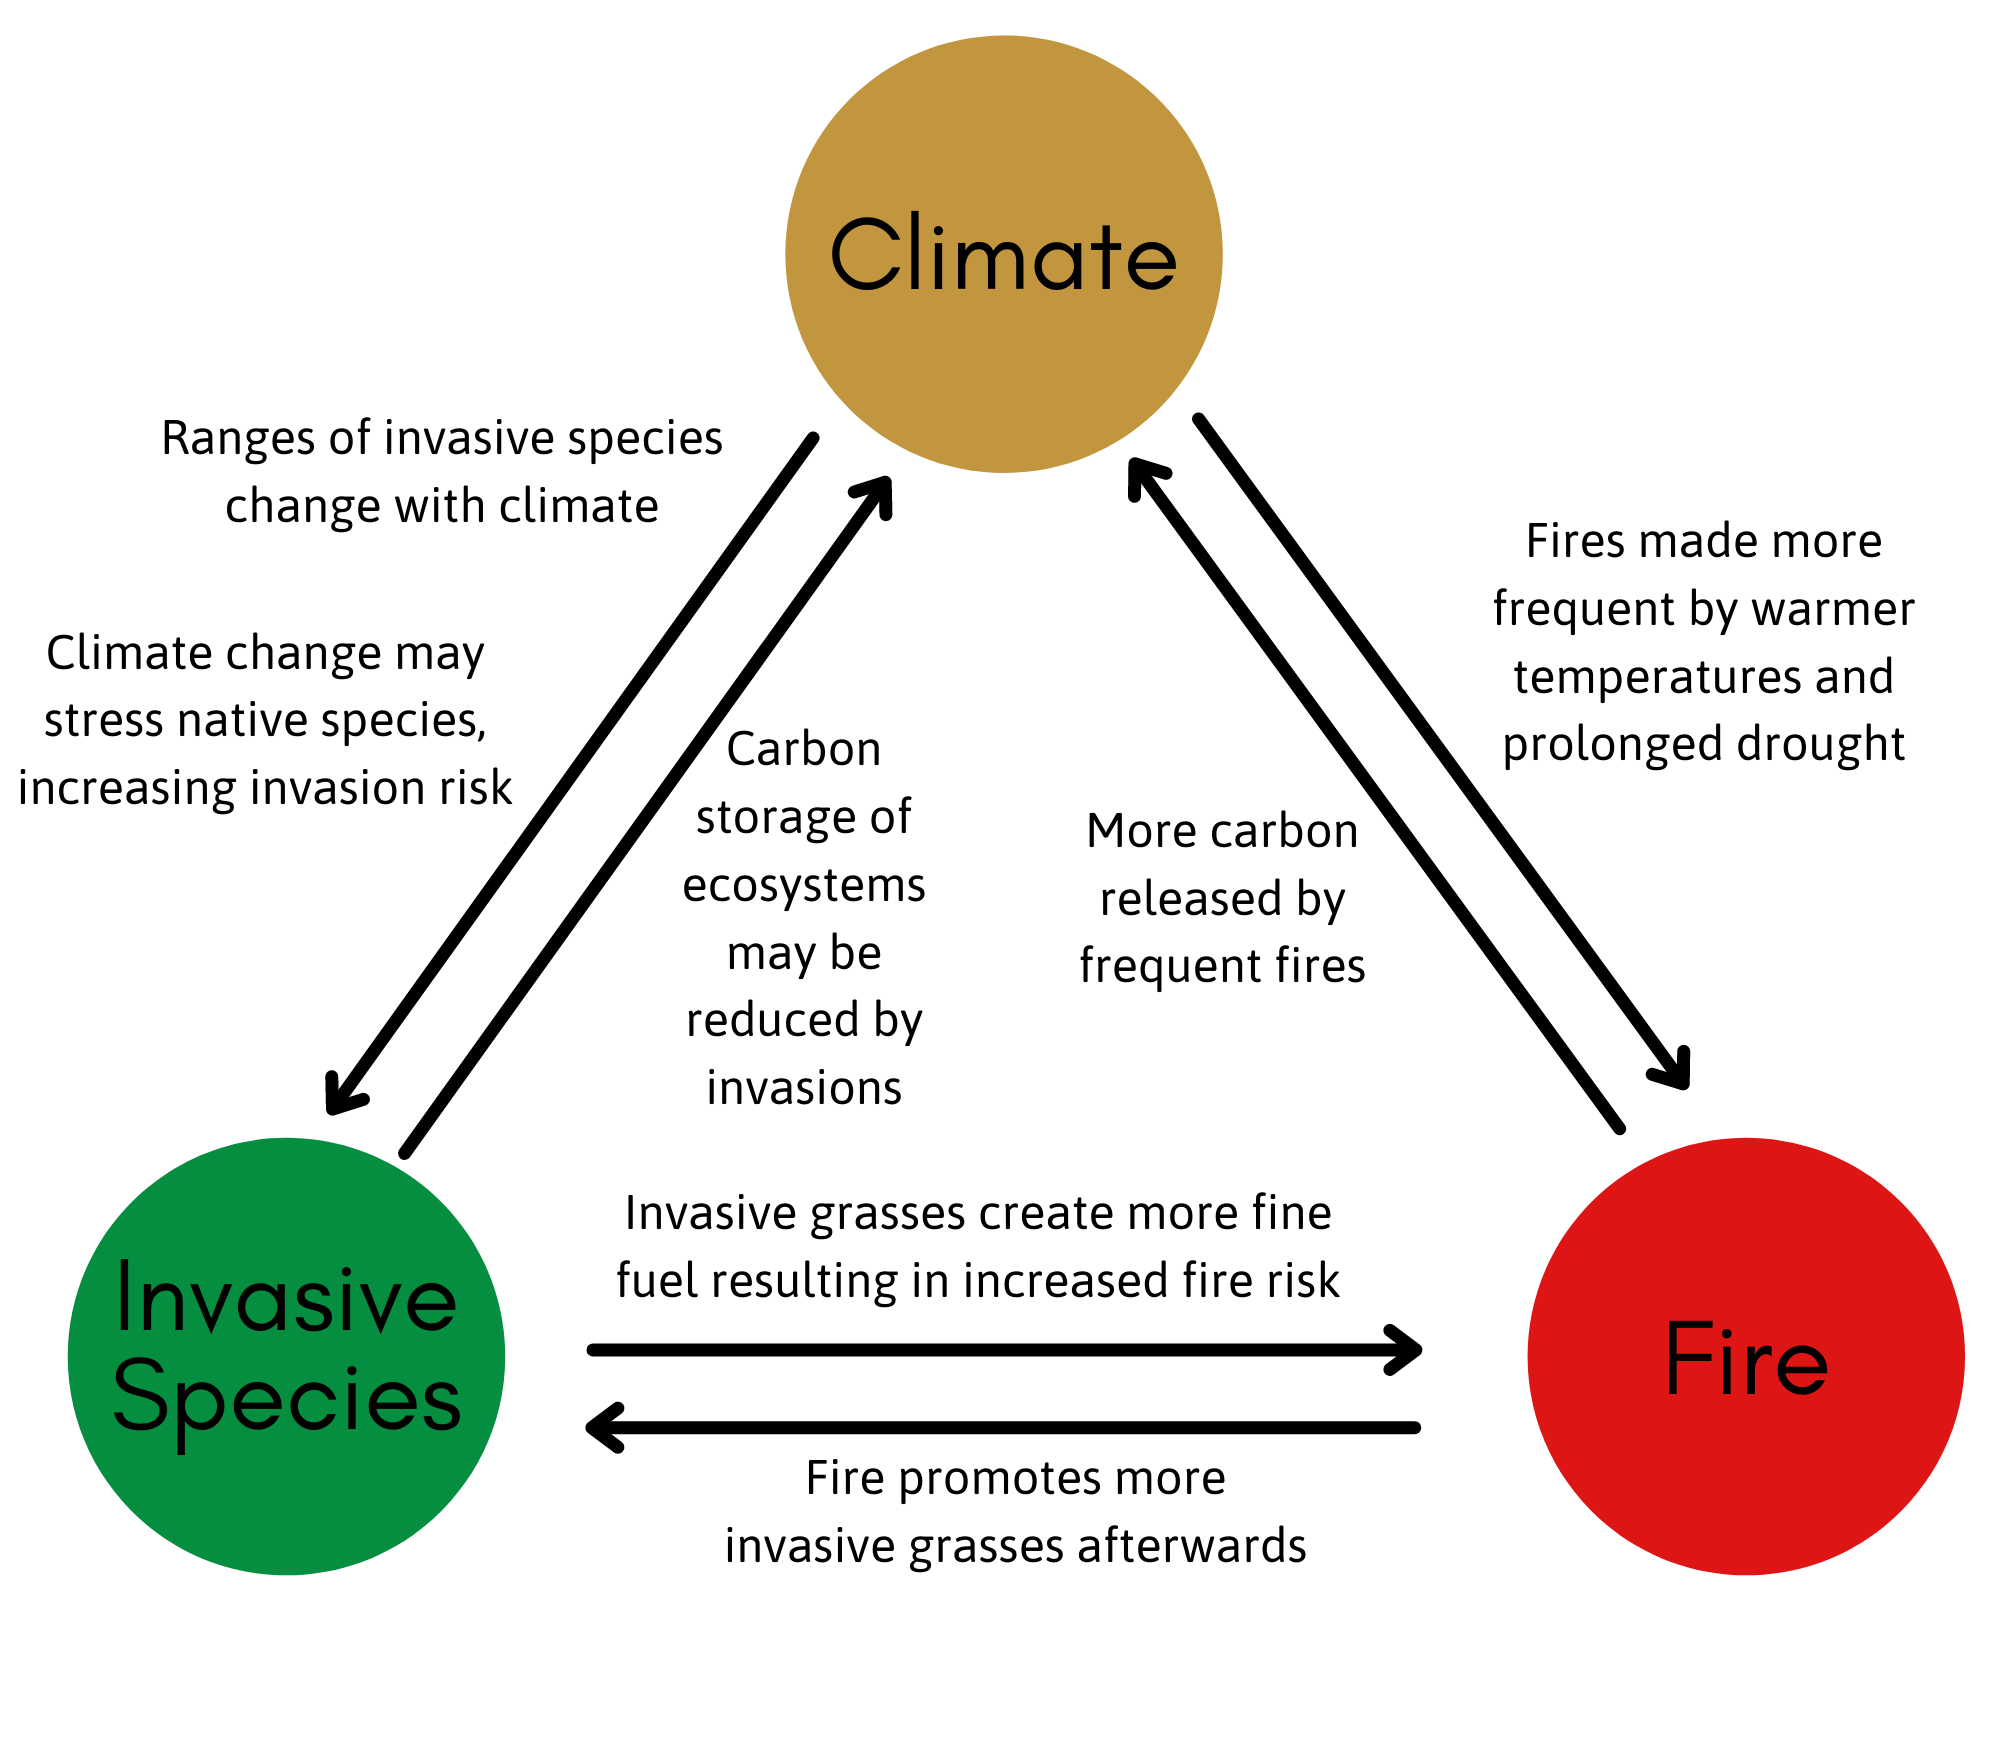 Climate-Fire-Invasive Diagram